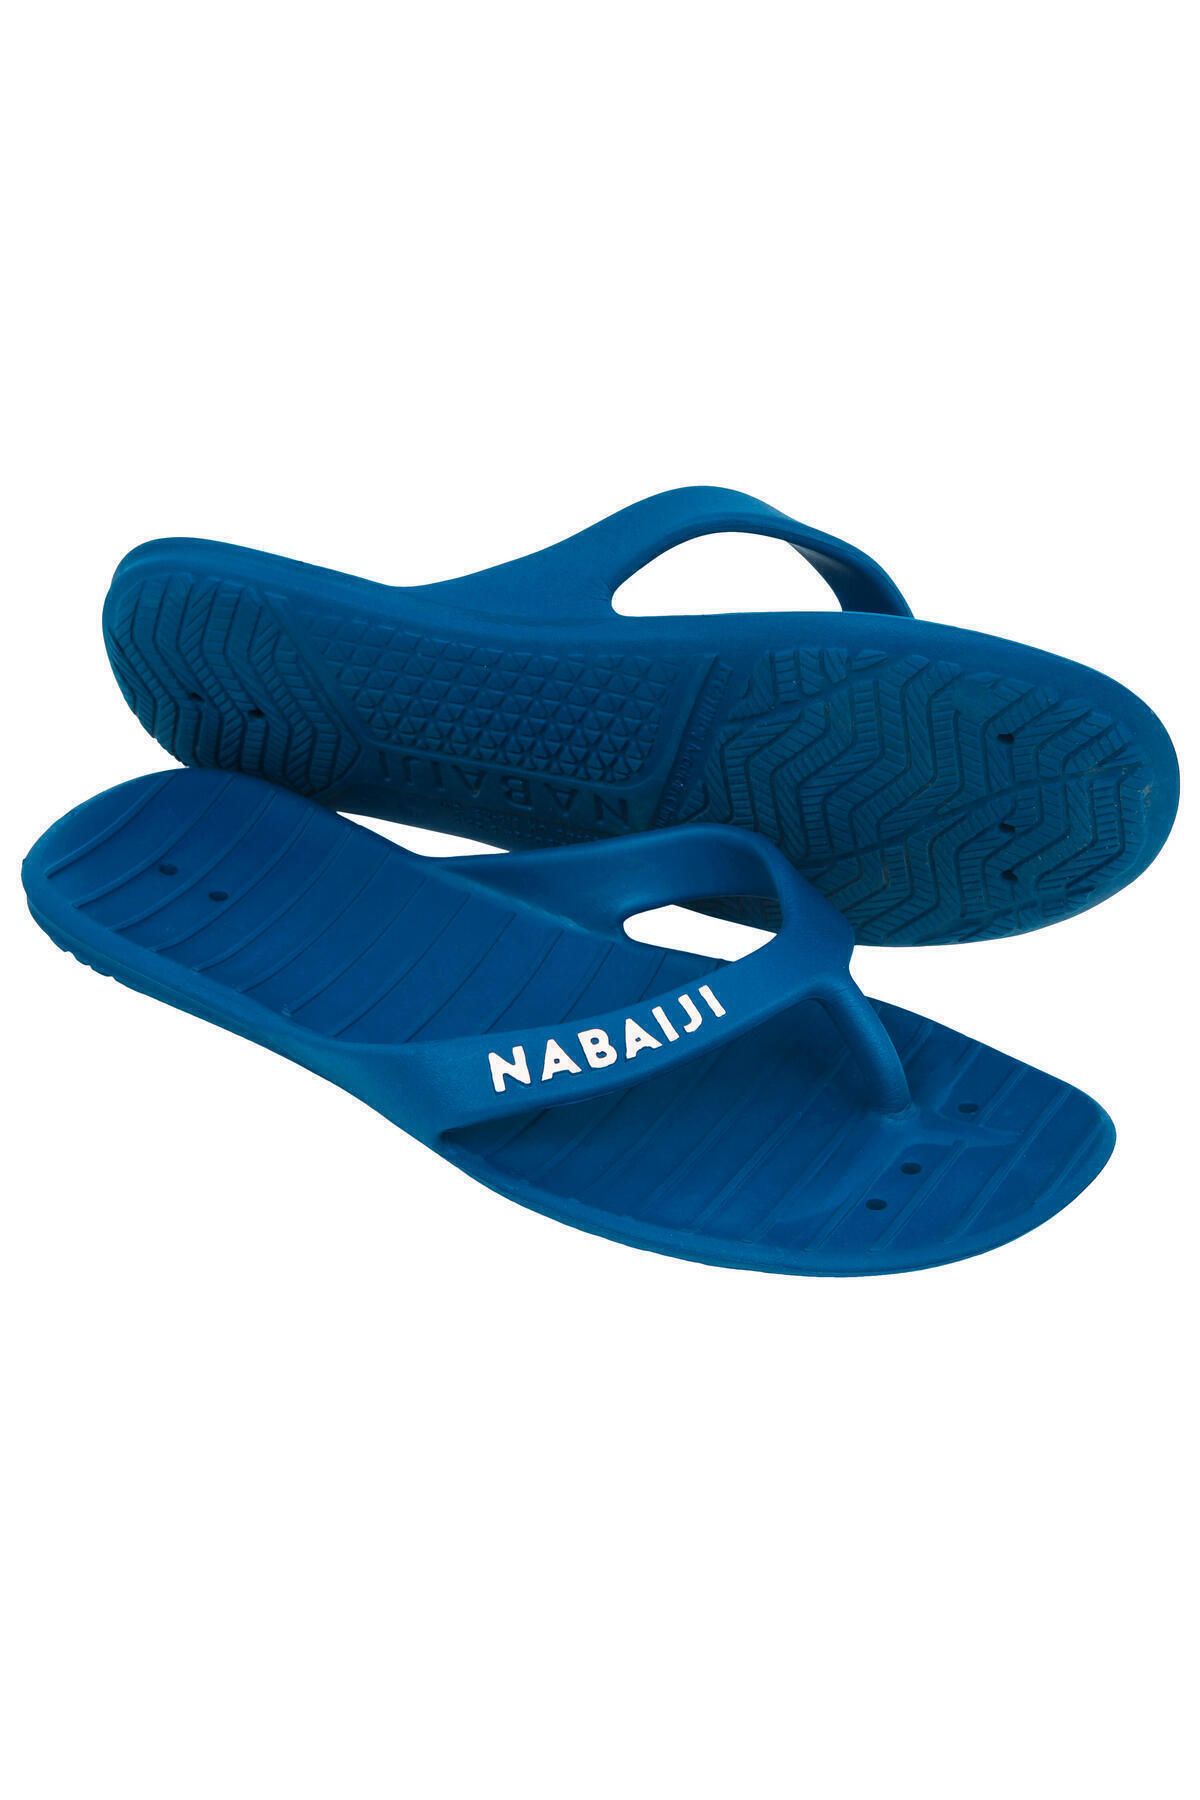 Decathlon Nabaiji Parmak Arası Kadın Terliği - Mavi - Tonga 100